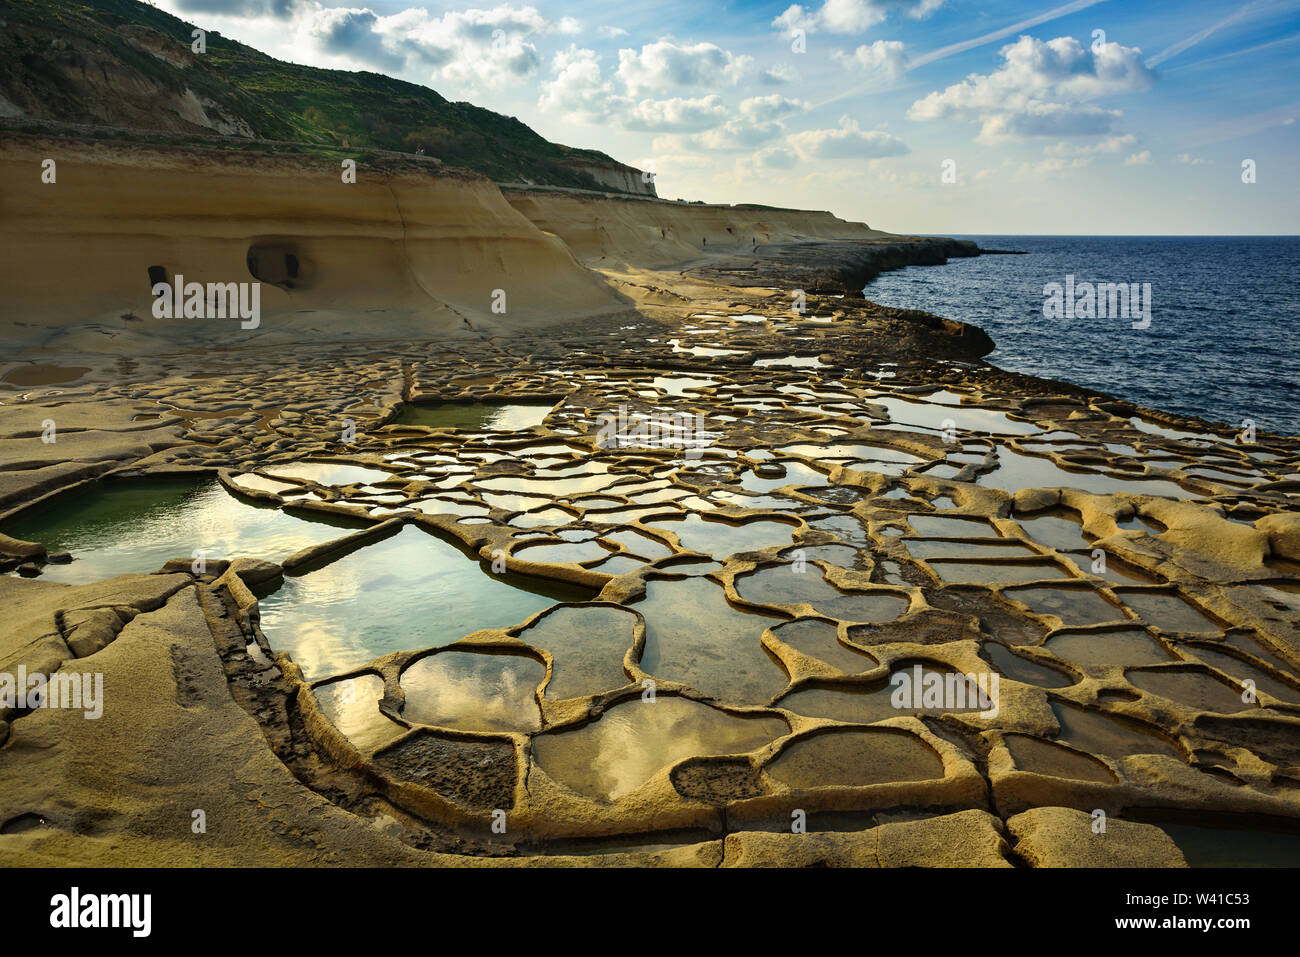 Bacs d'évaporation de sel sur Malte. Près des étangs remplis d'eau de mer à sunny day, février 2019 Banque D'Images